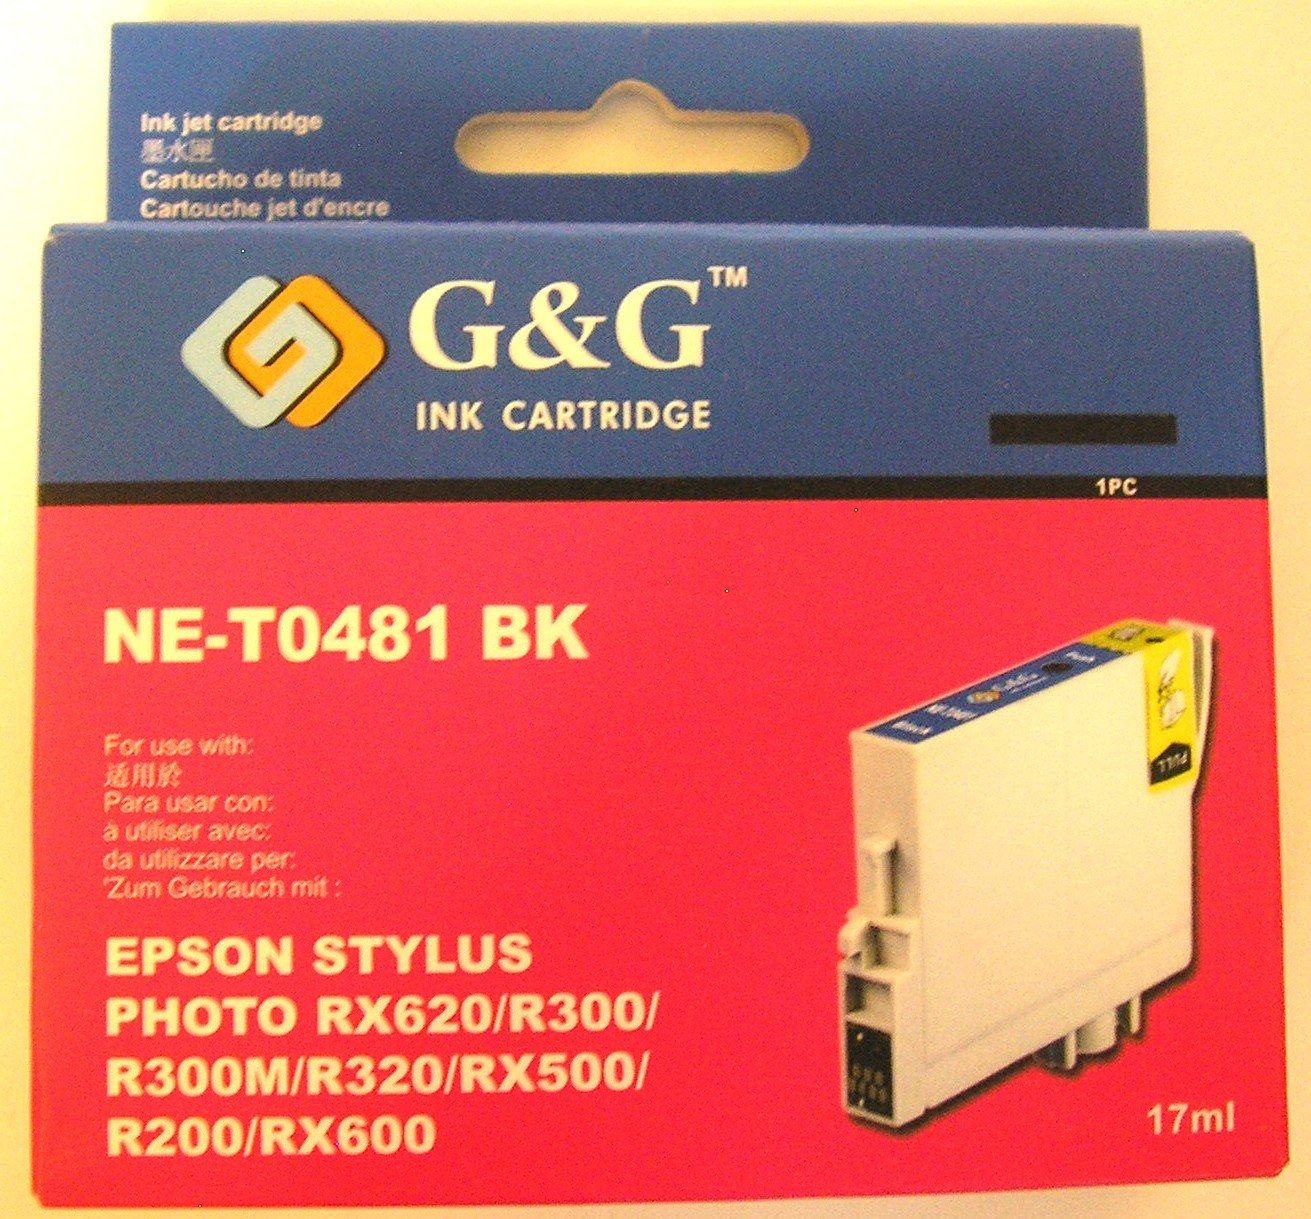 Gandg Black Ink Cartridge For Epson Stylus Photo R200 R300 R300m R320 Rx500 Rx600 Rx620 5266